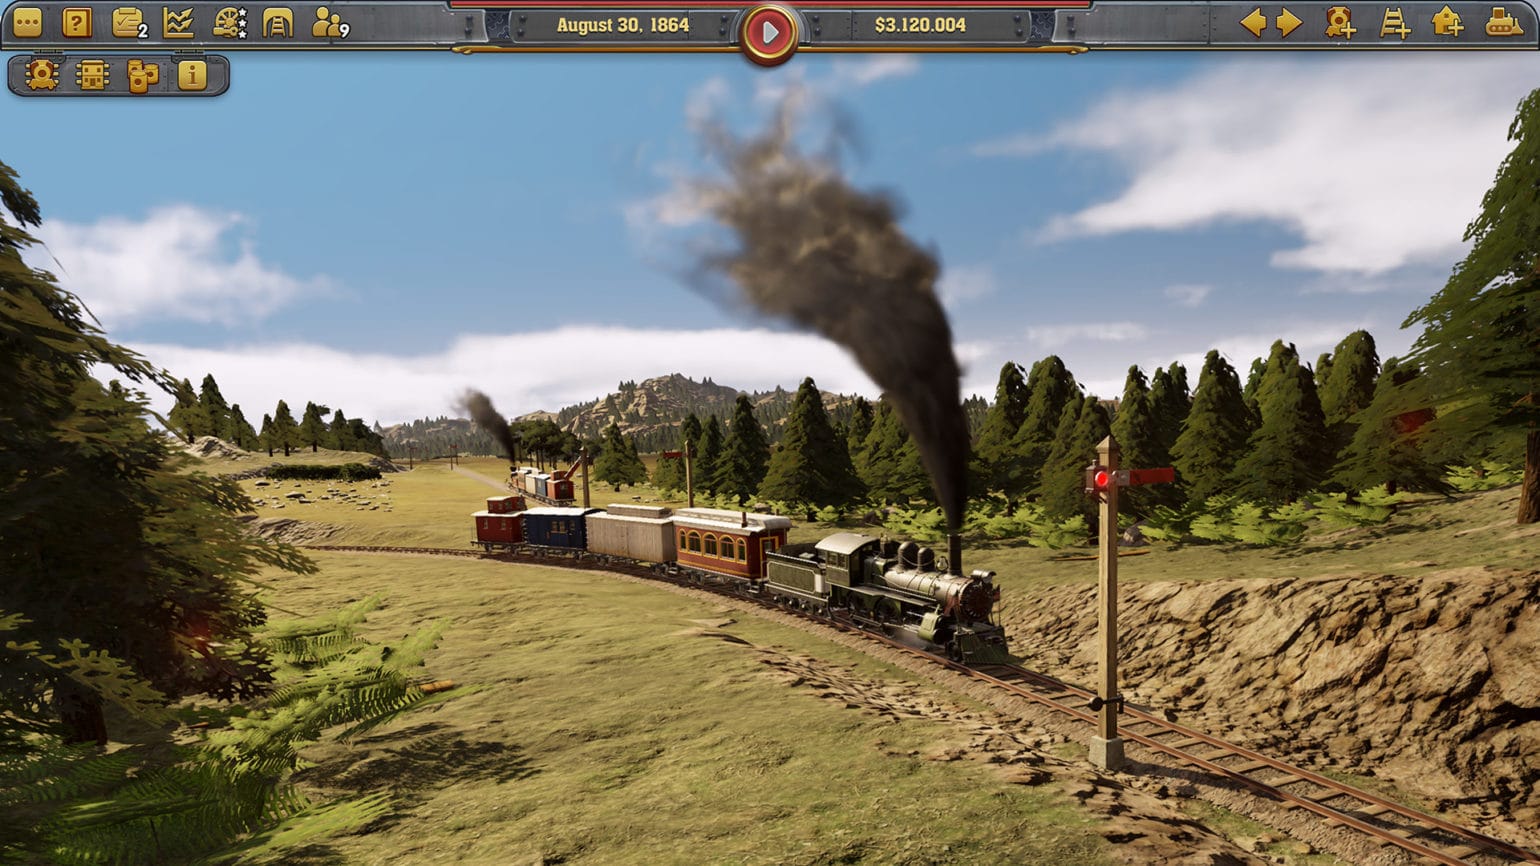 Railroad corporation train à vapeur